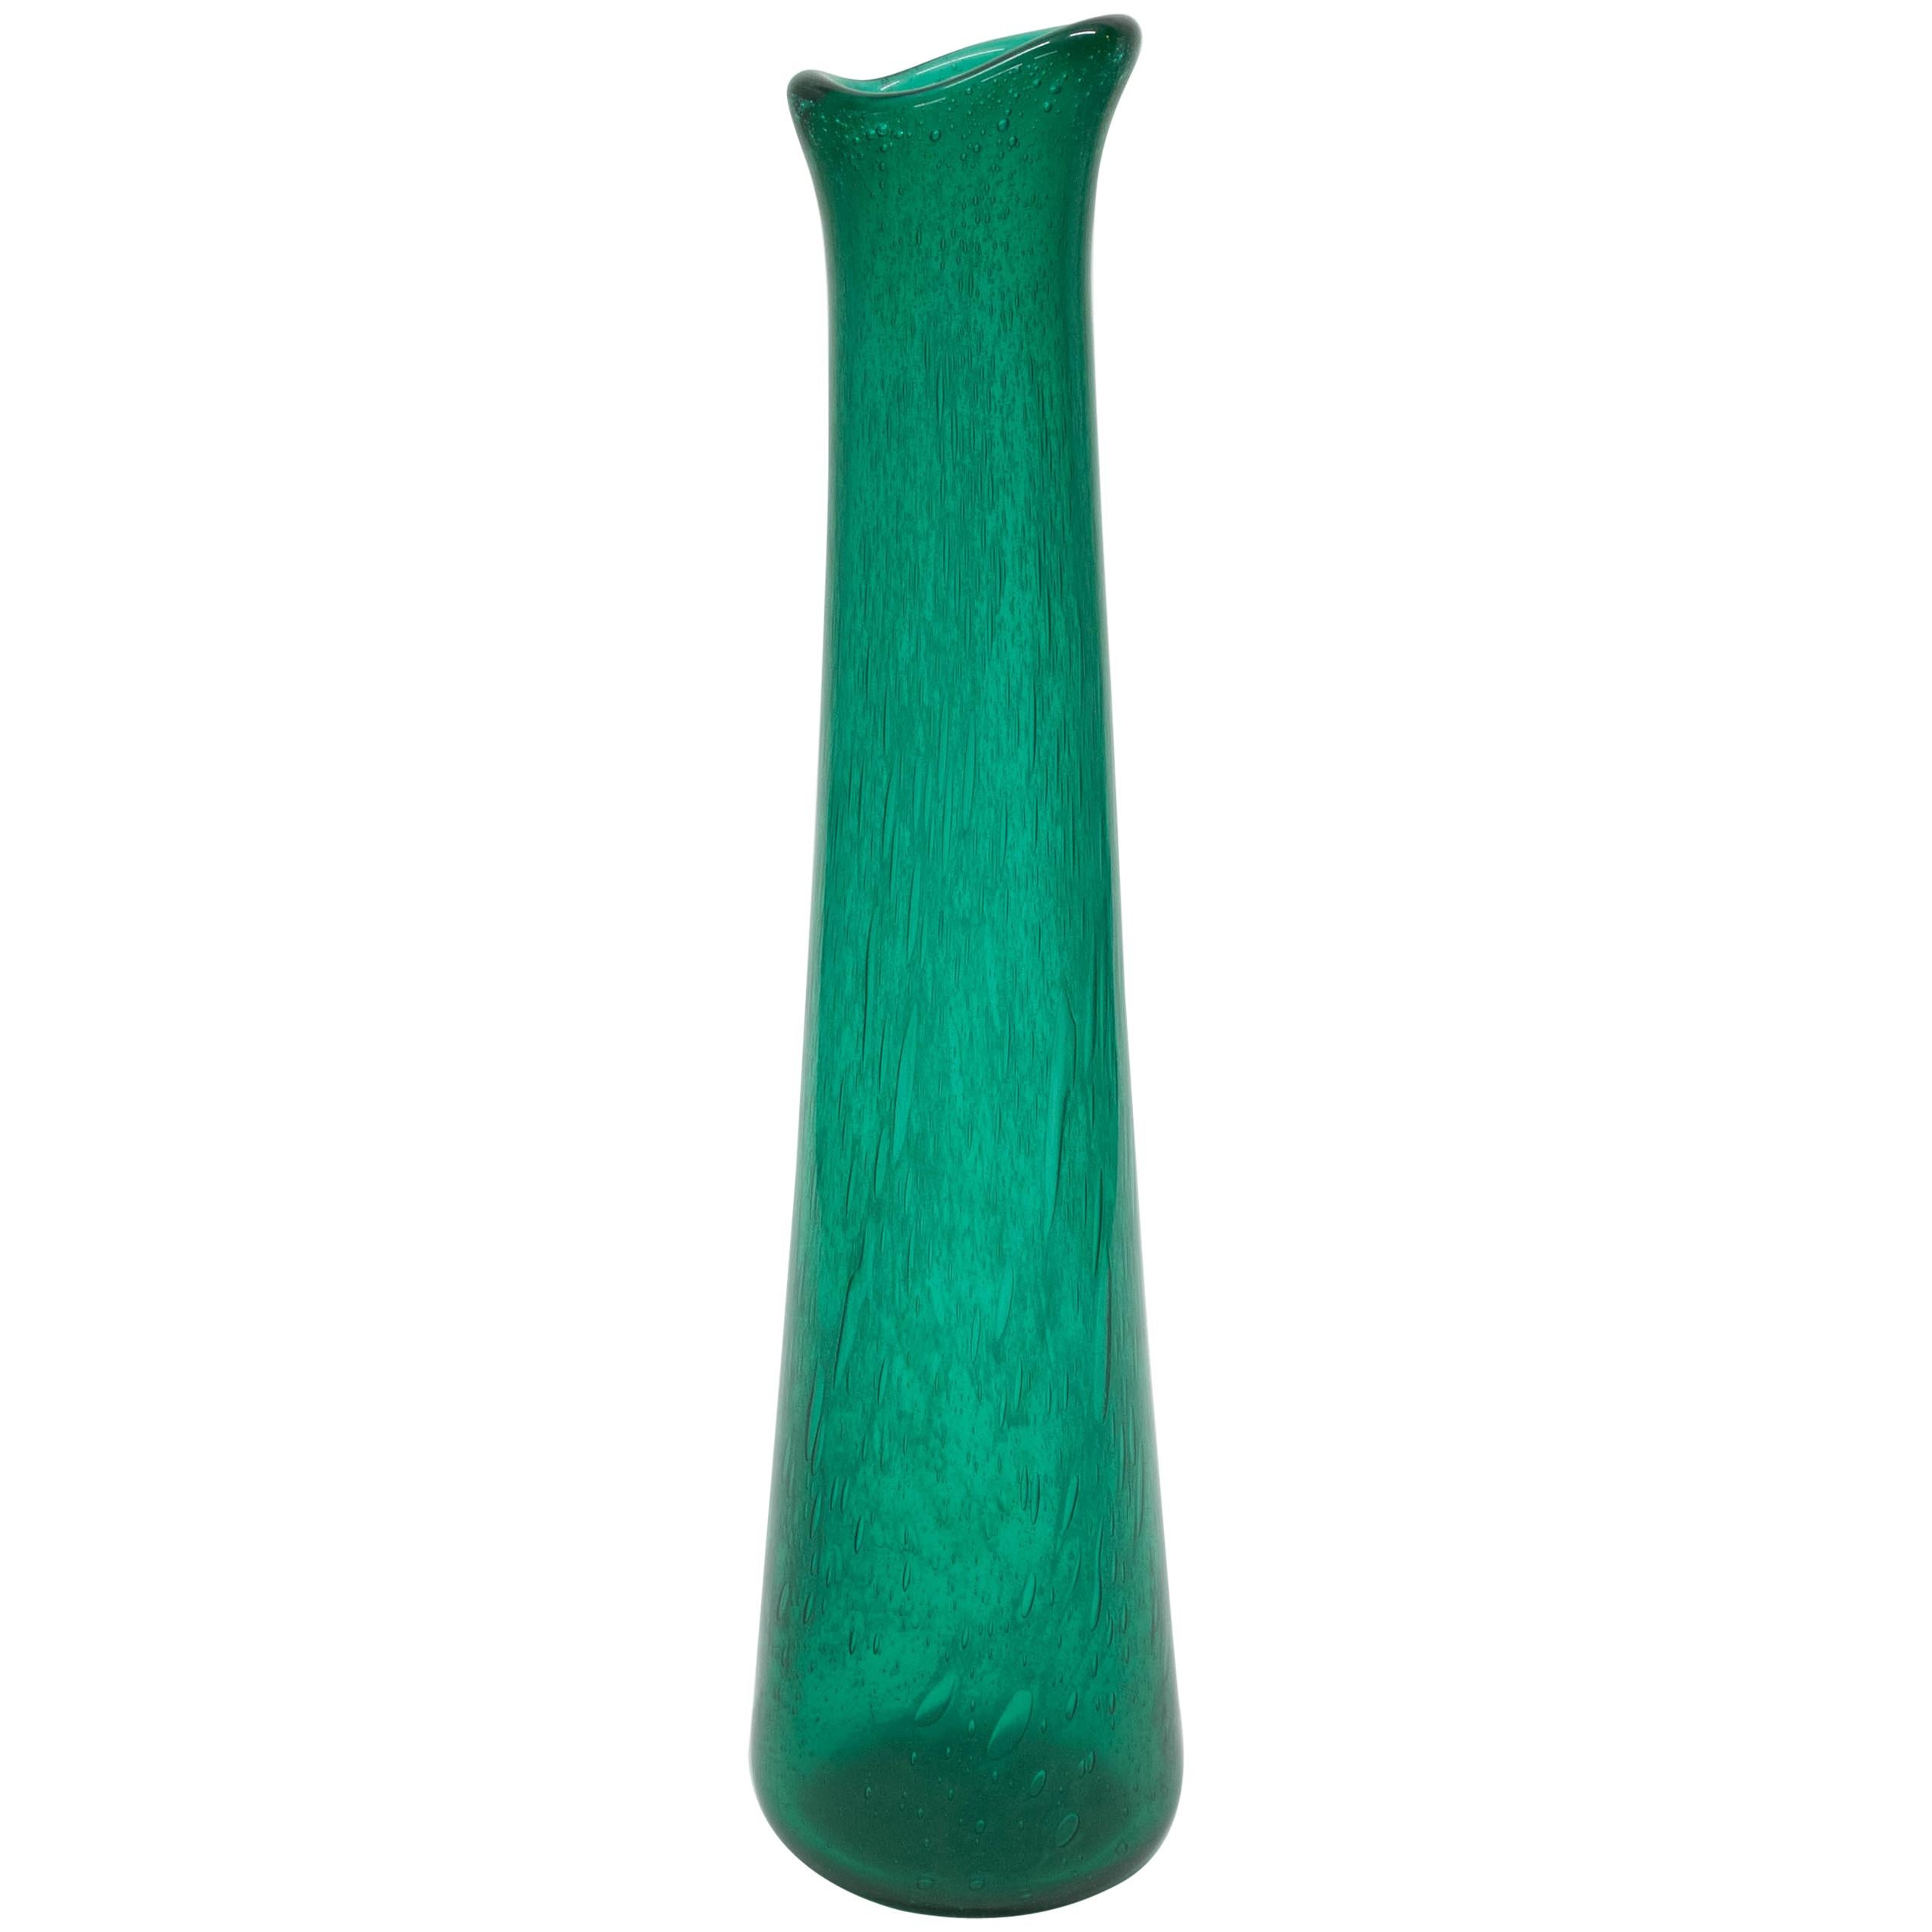 Midcentury Tall Green K-4022 "Grønland" Vase by Arne Jon Jutrem for Hadeland